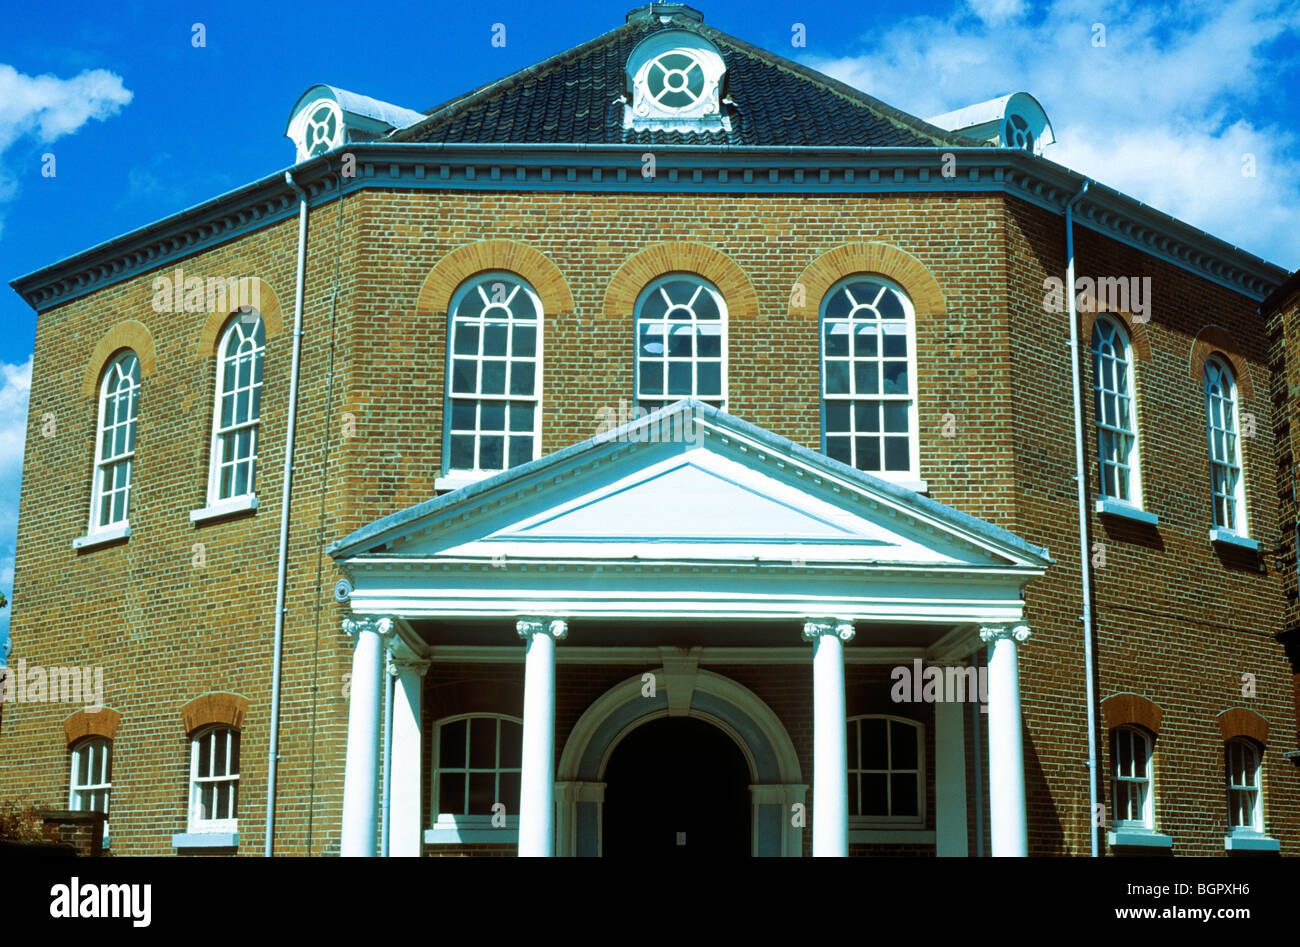 Norwich, Kirchen achteckigen presbyterianischen Kapelle 1754 Englisch nicht Comformist East Anglia England UK Architektur des 18. Jahrhunderts Stockfoto